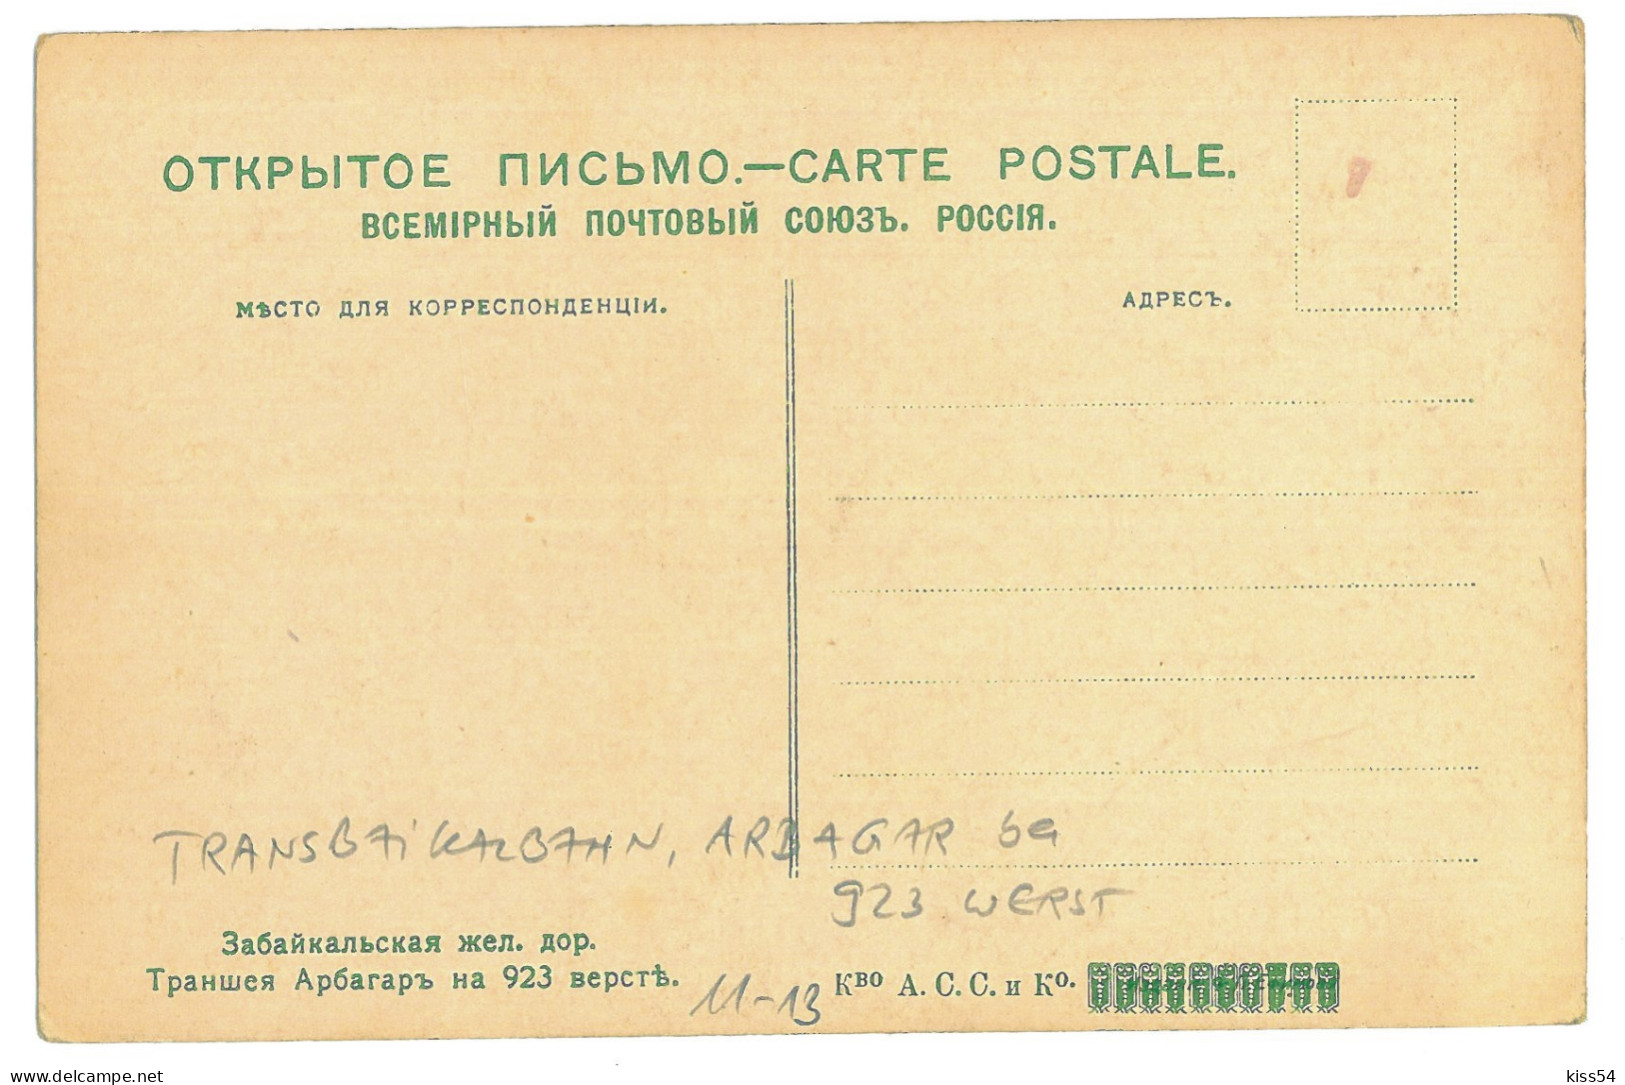 RUS 87 - 22548 ARBAGAR, Transbaikal Railway, Russia - Old Postcard - Unused - Russia